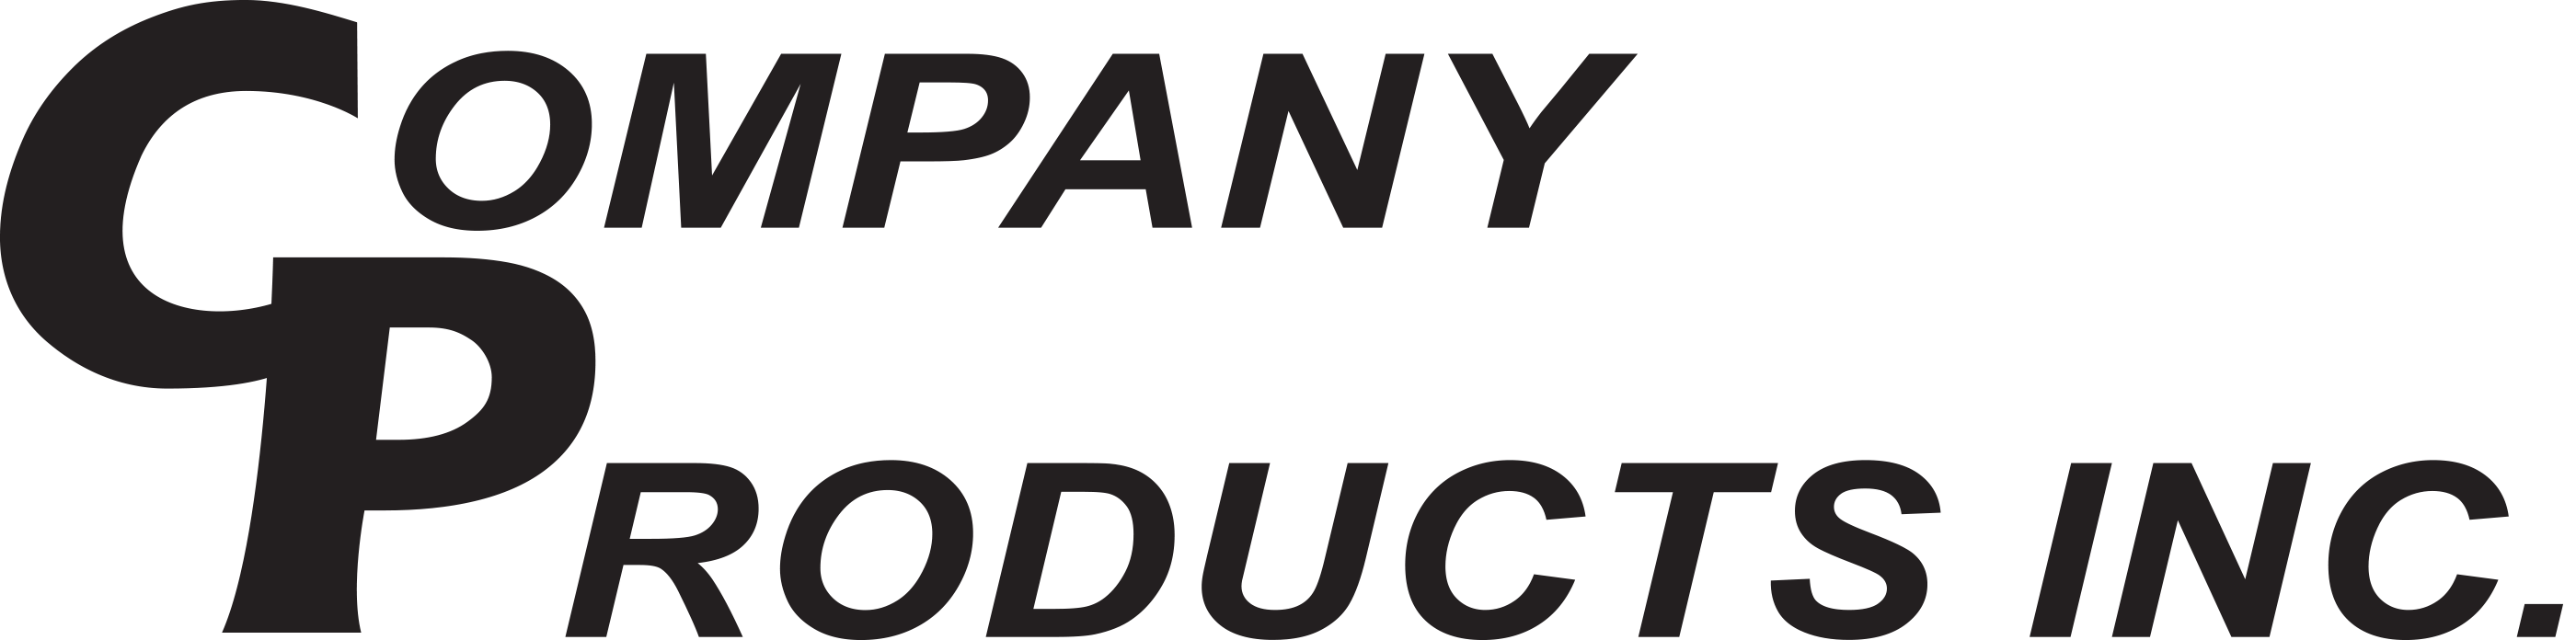 Company_Products_Logo_Black